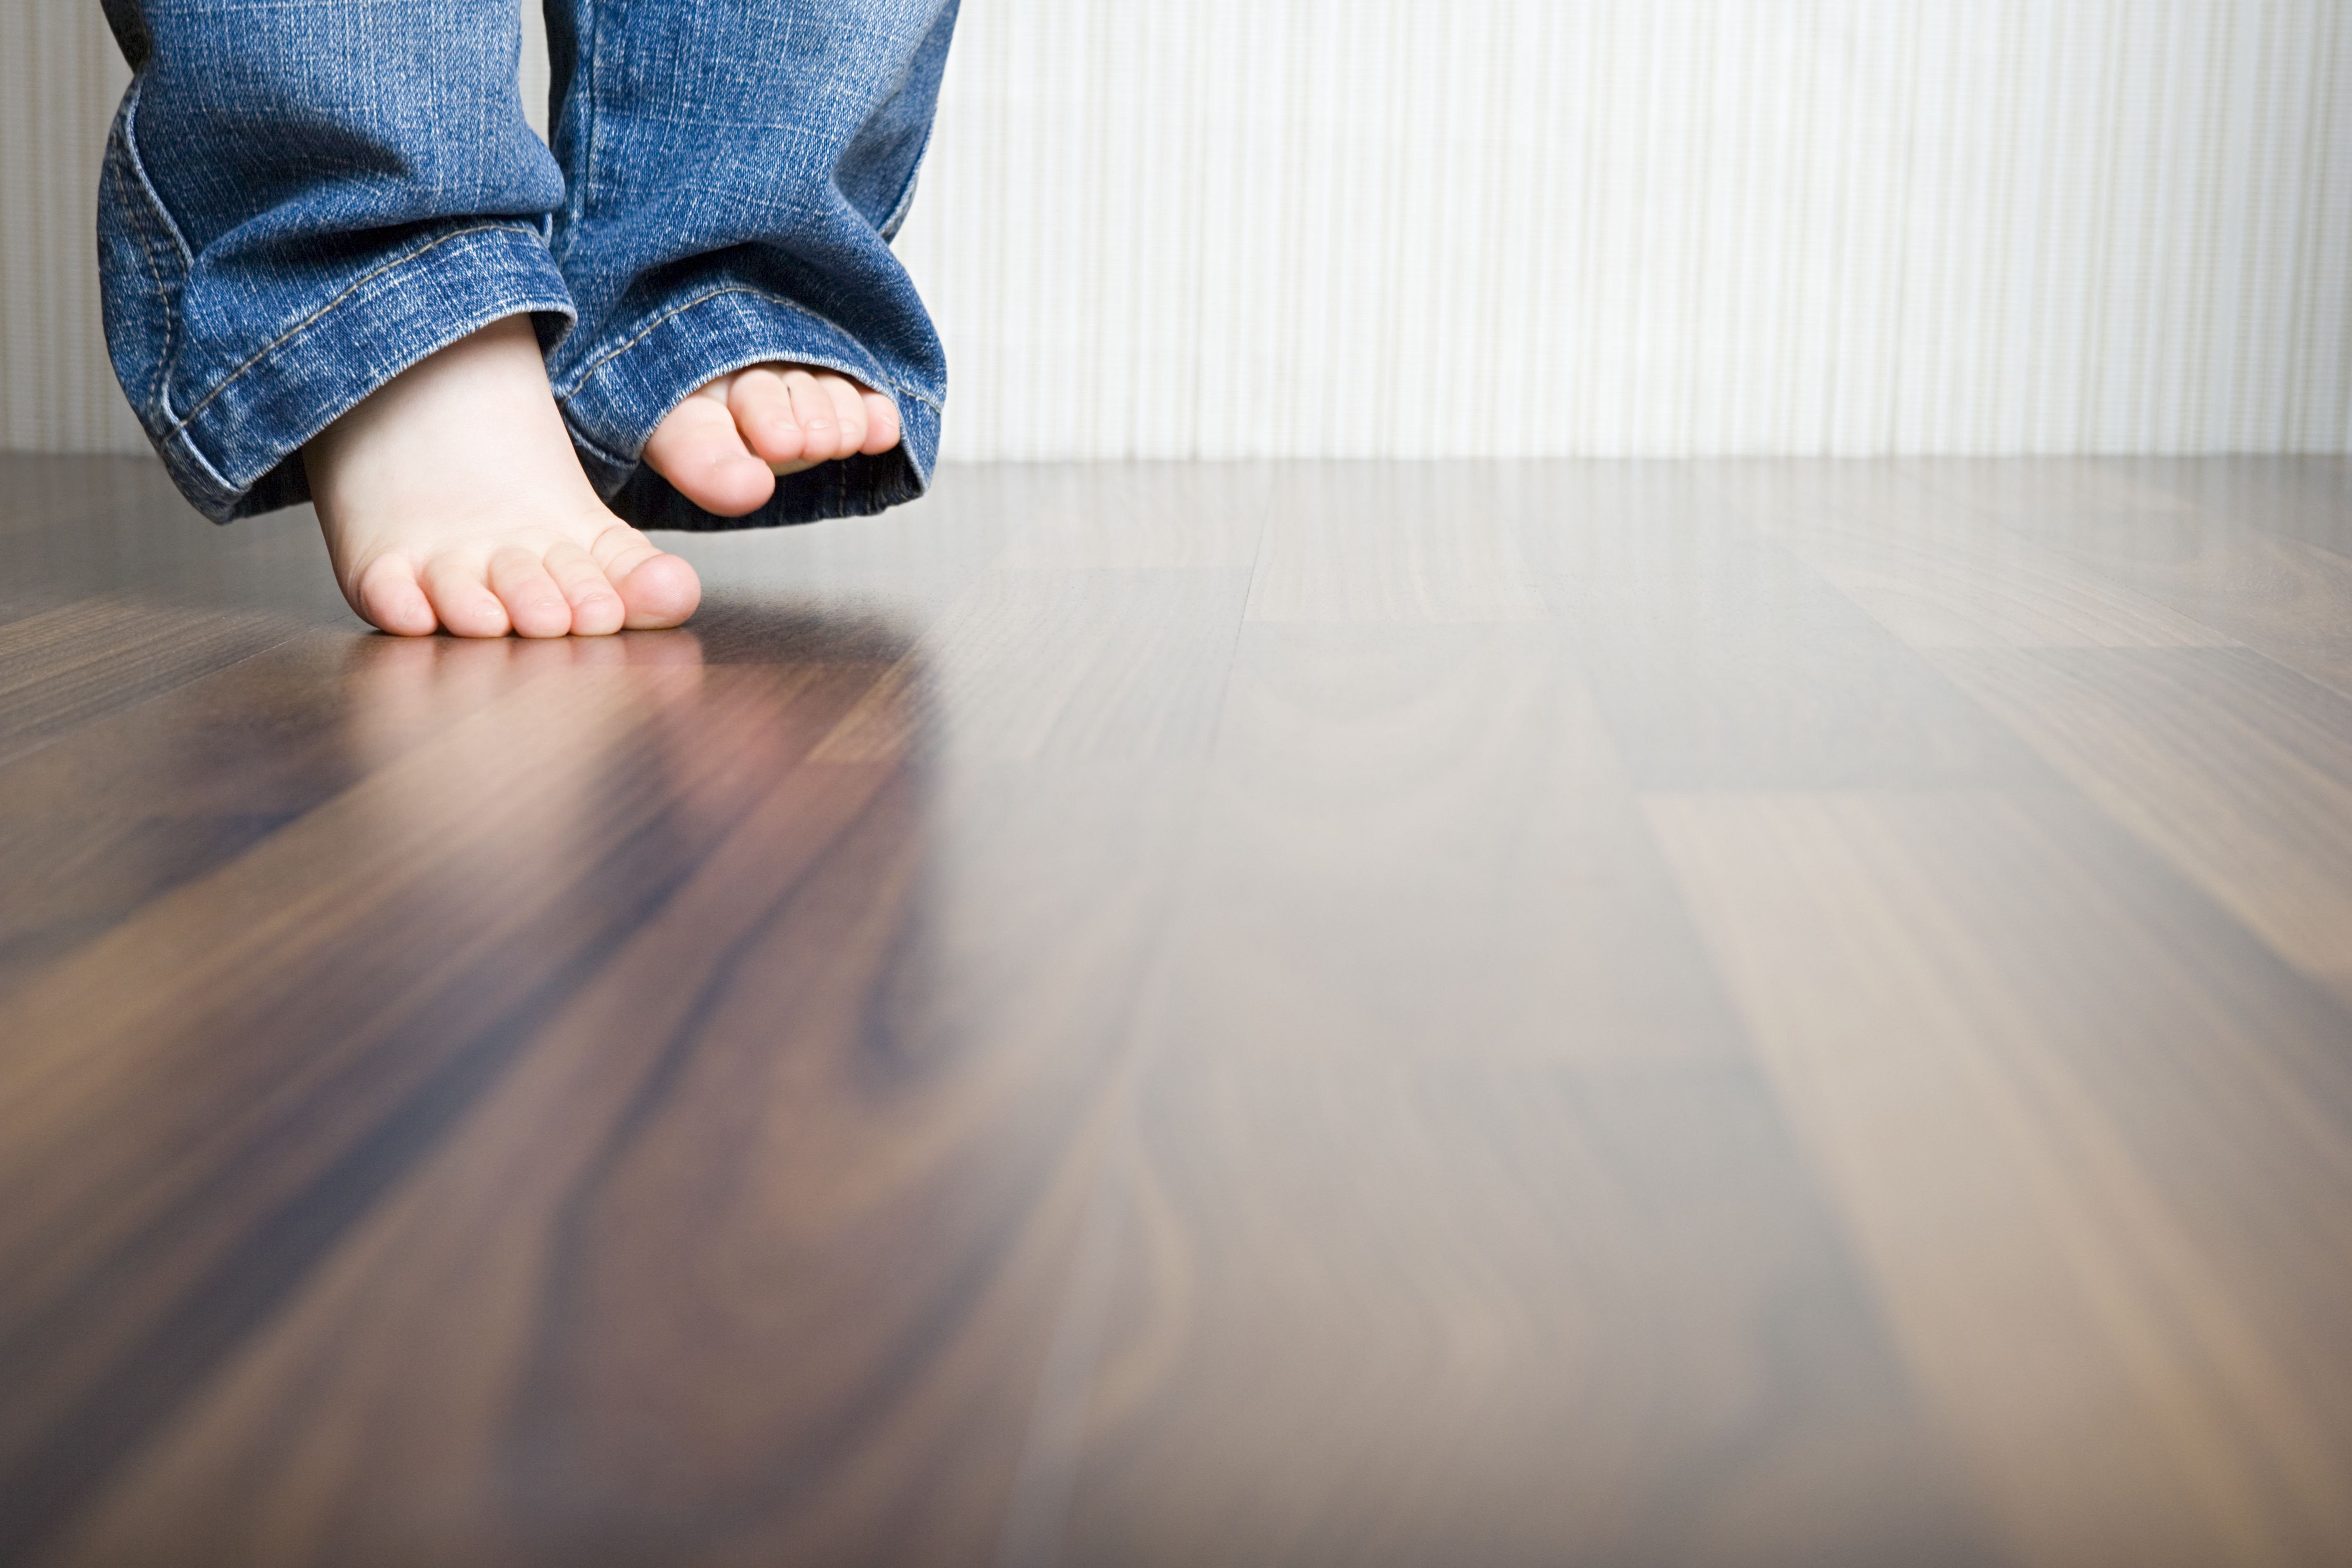 Bona Hardwood Floor Mop Of How to Clean Hardwood Floors Best Way to Clean Wood Flooring Throughout 1512149908 Gettyimages 75403973